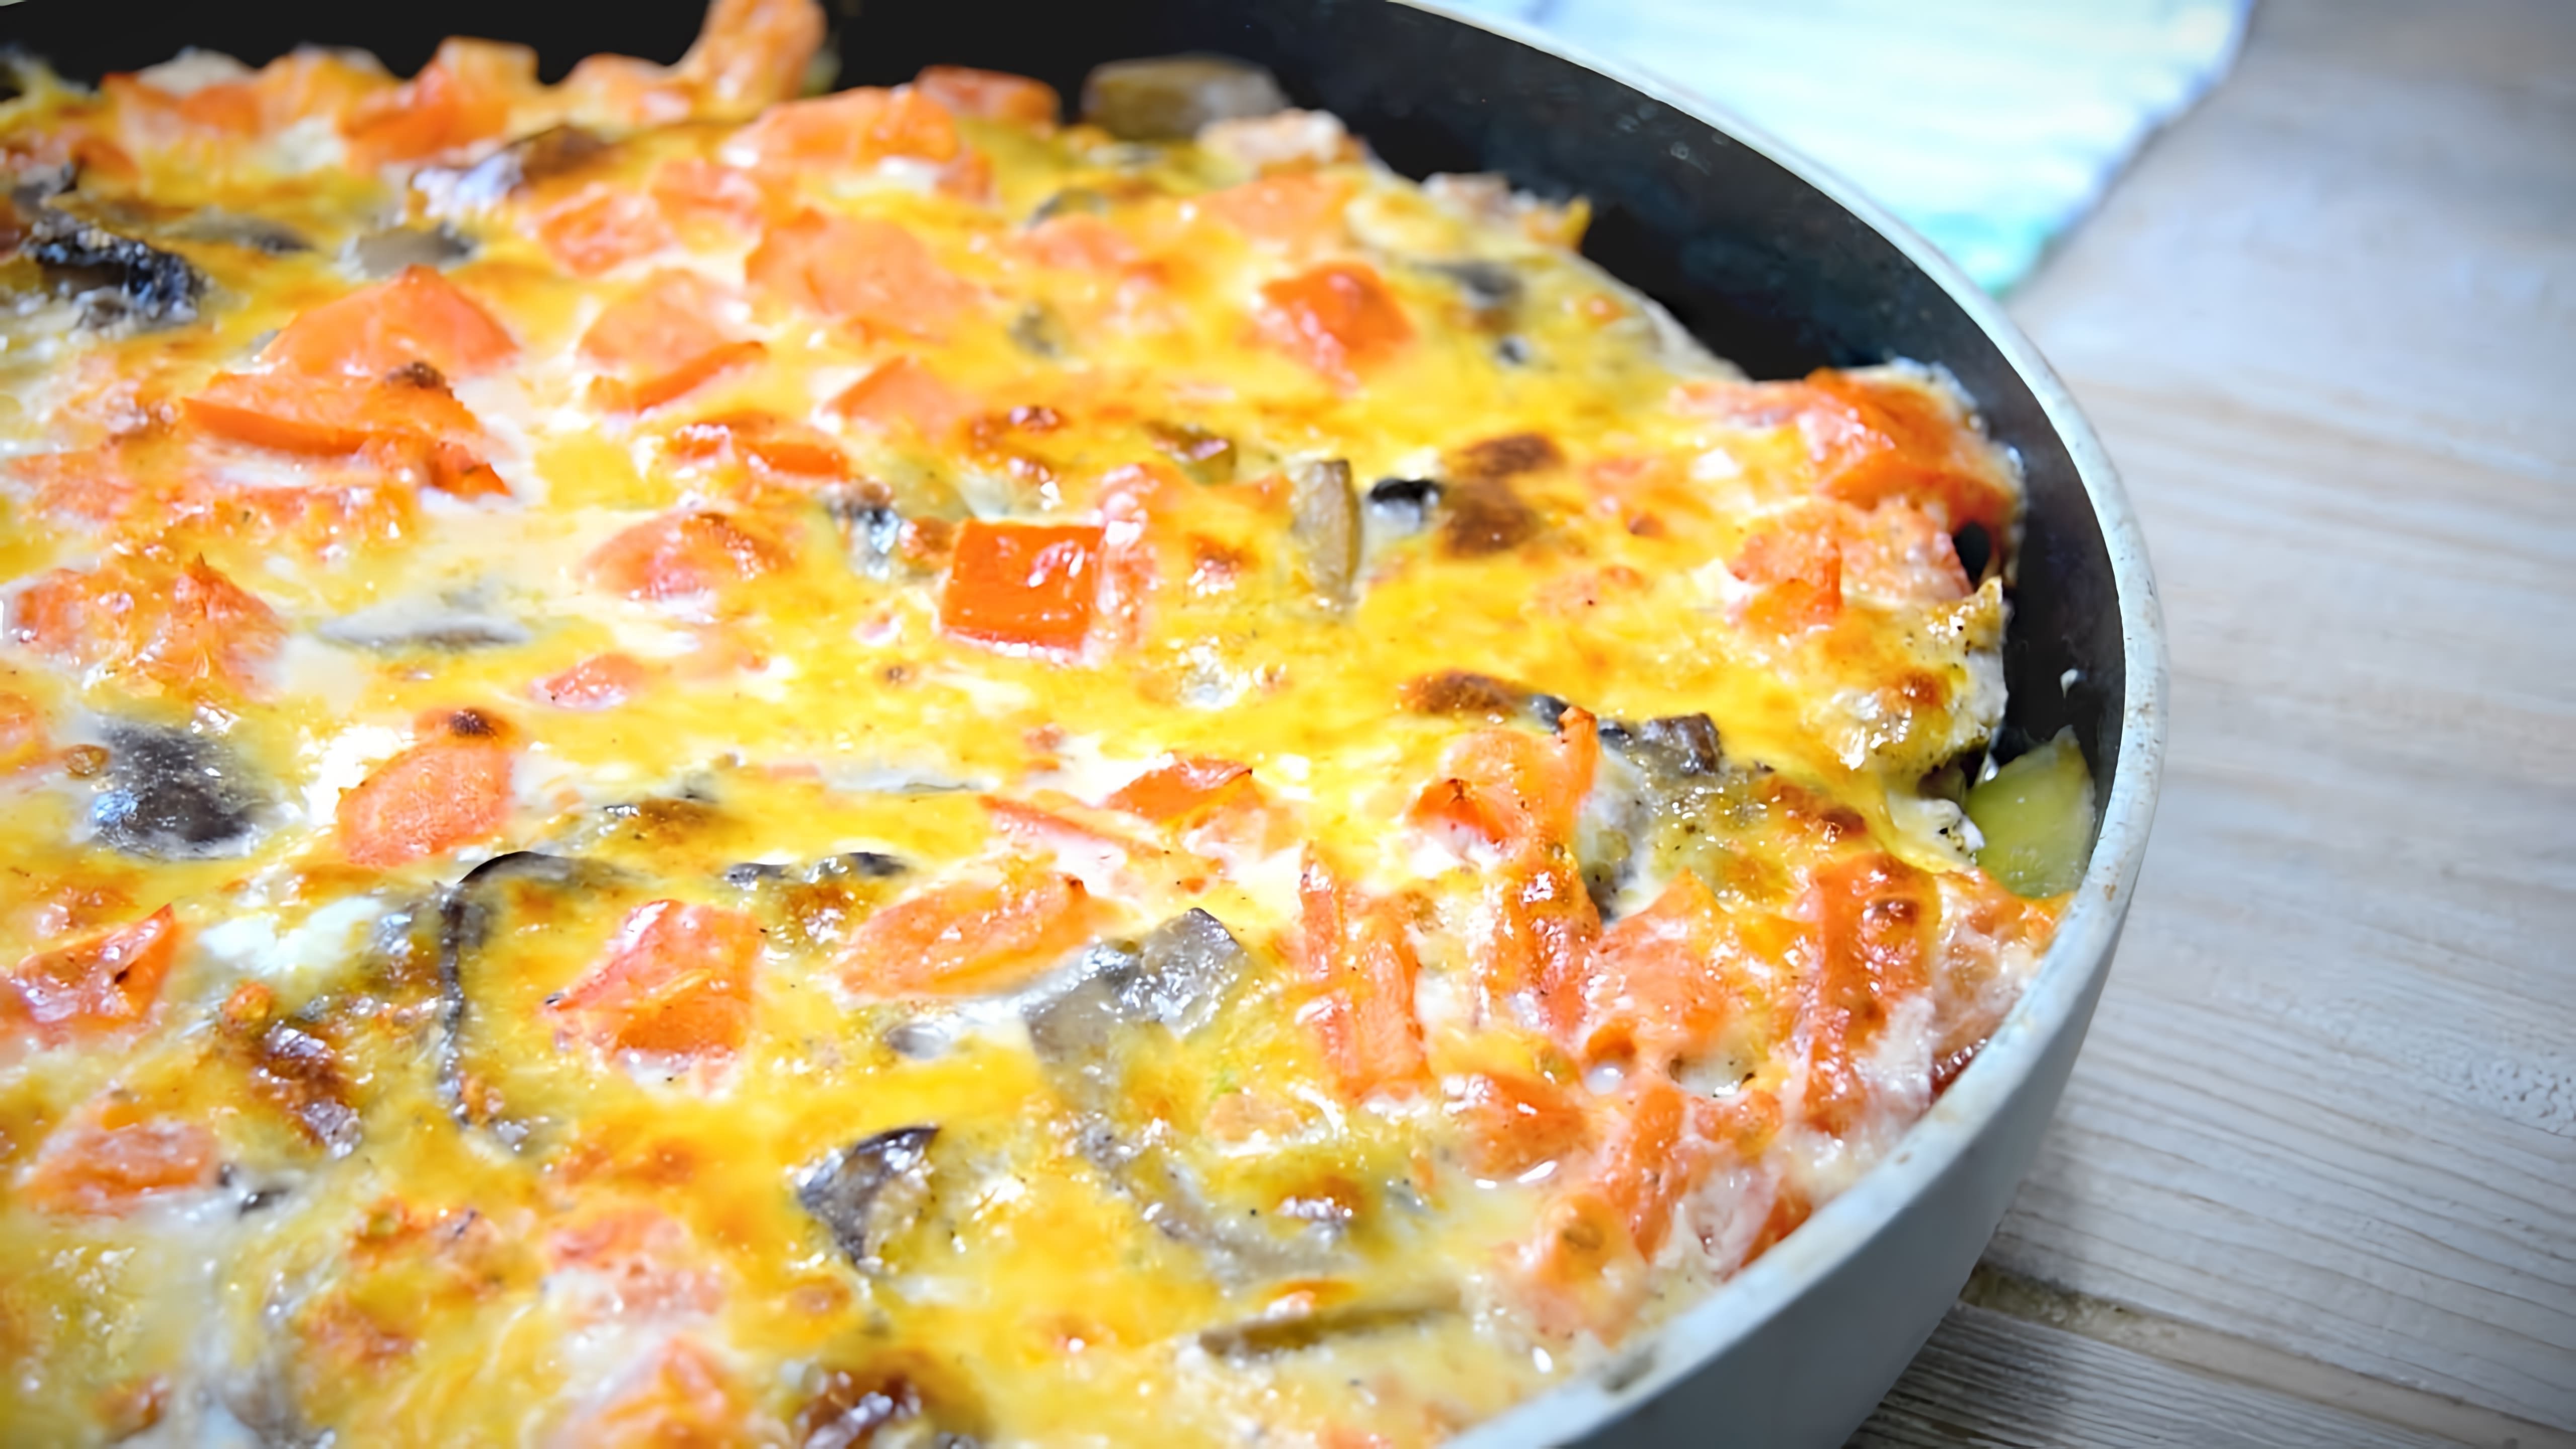 В этом видео демонстрируется рецепт приготовления бюджетного ужина - картофеля с курицей и грибами в духовке